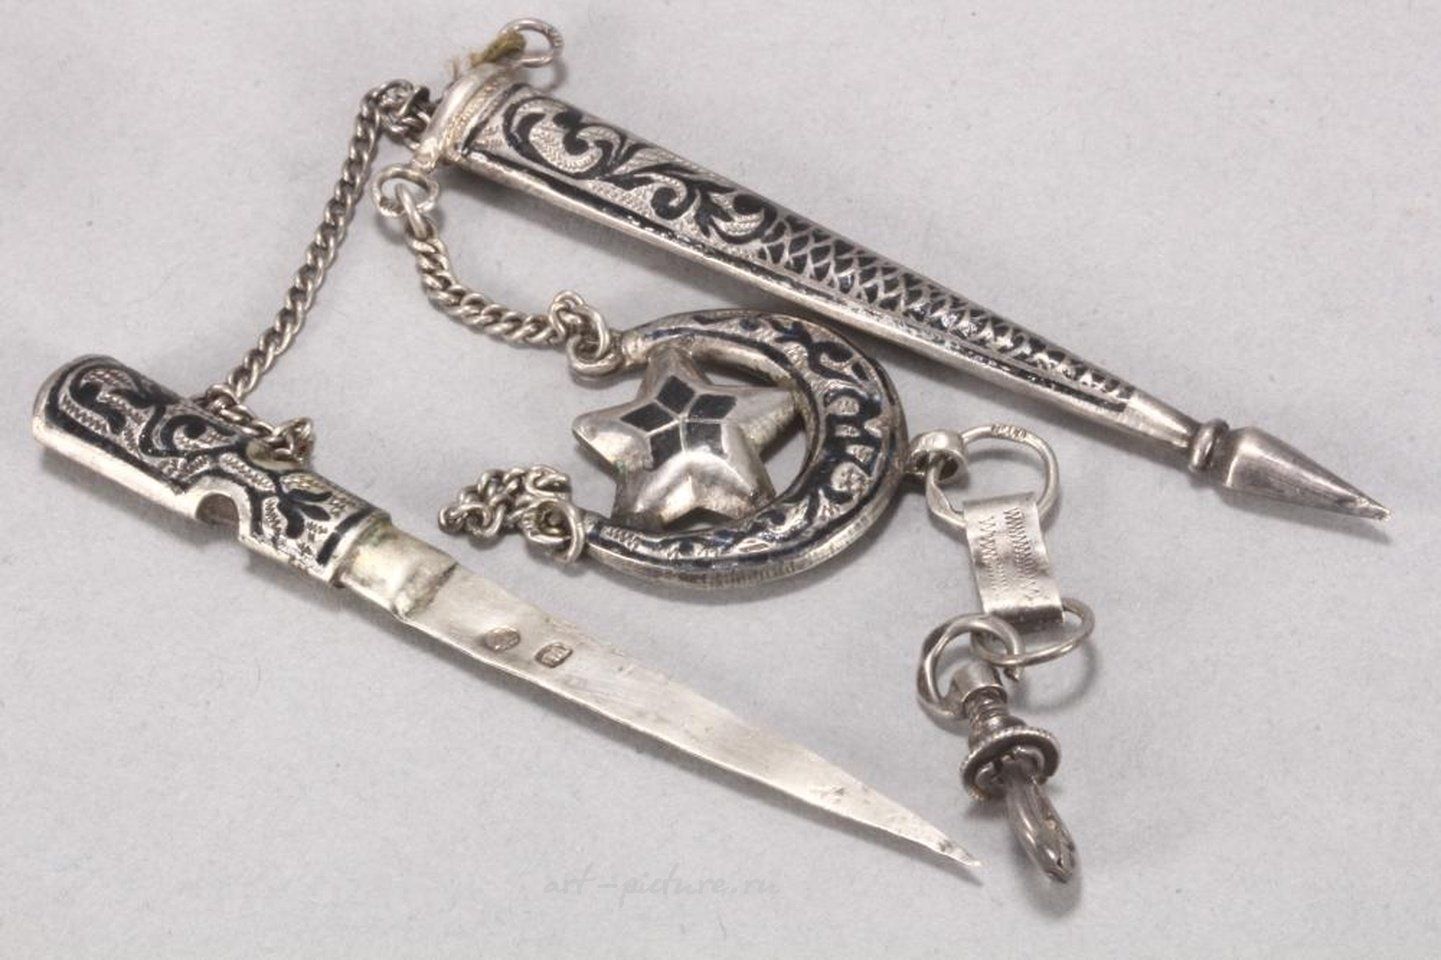 Russian silver , Russian Caucasus Silver and Niello Dagger Brooch.